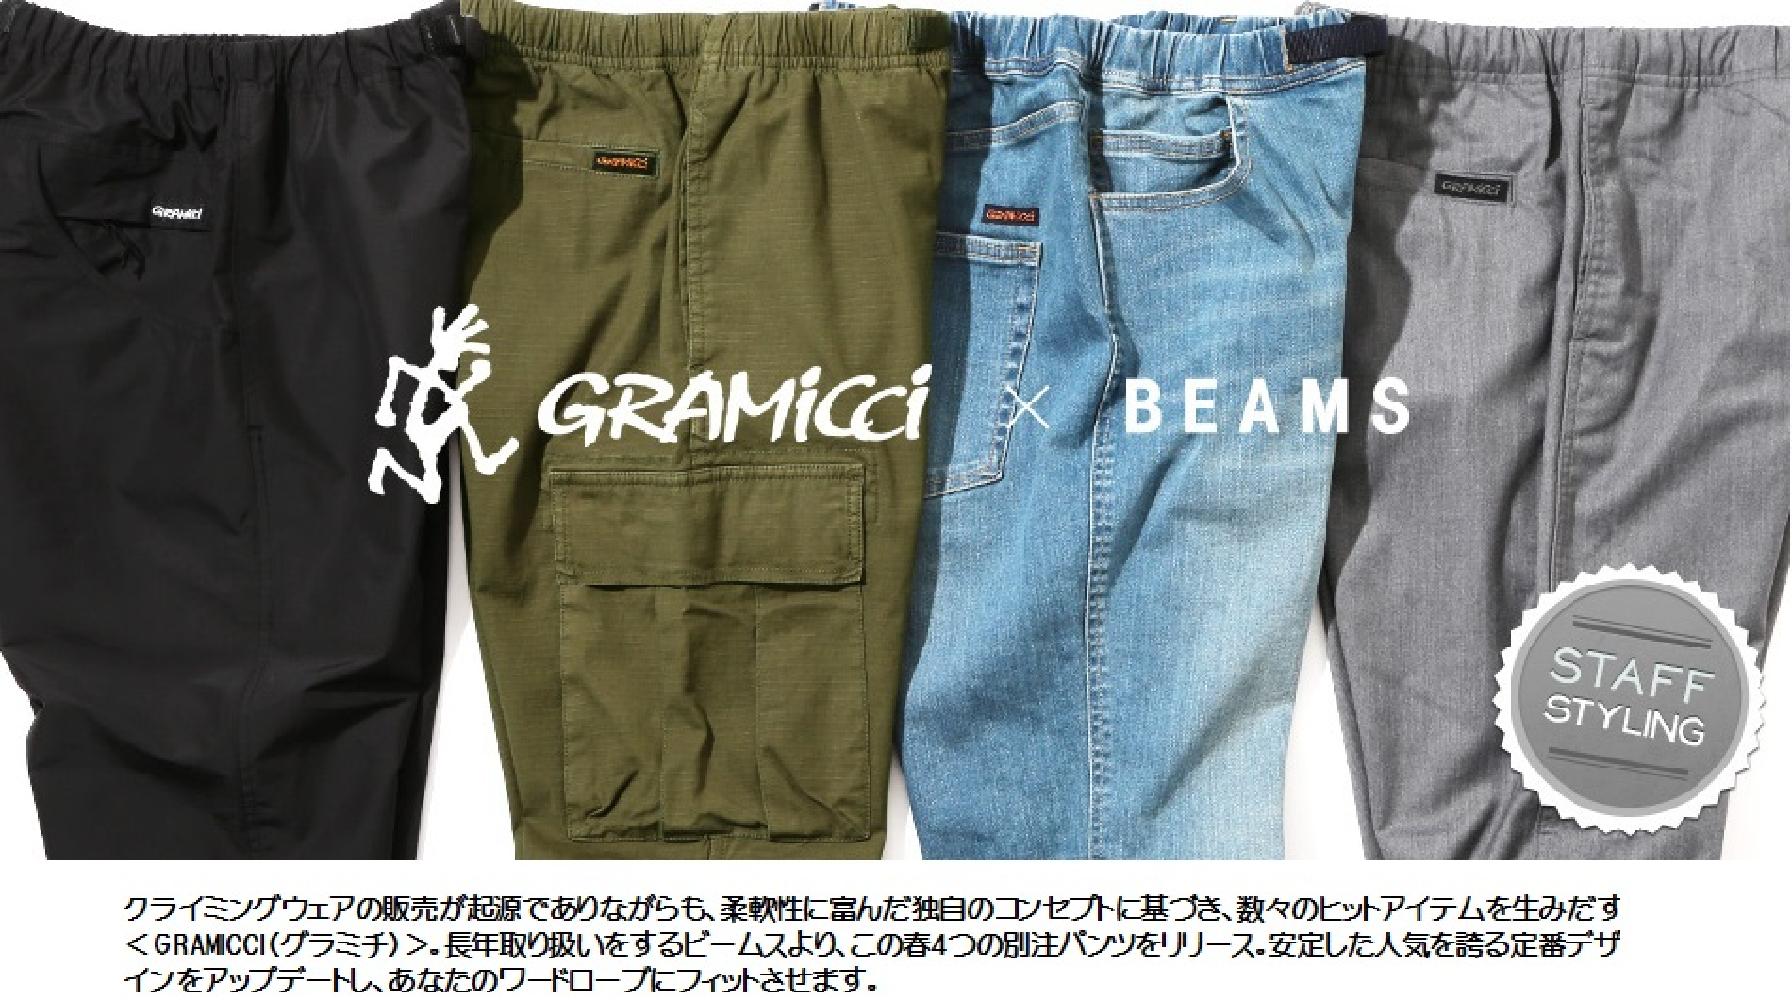 GRAMICCI×BEAMS 別注パンツコレクション | ファッション通販マルイウェブチャネル